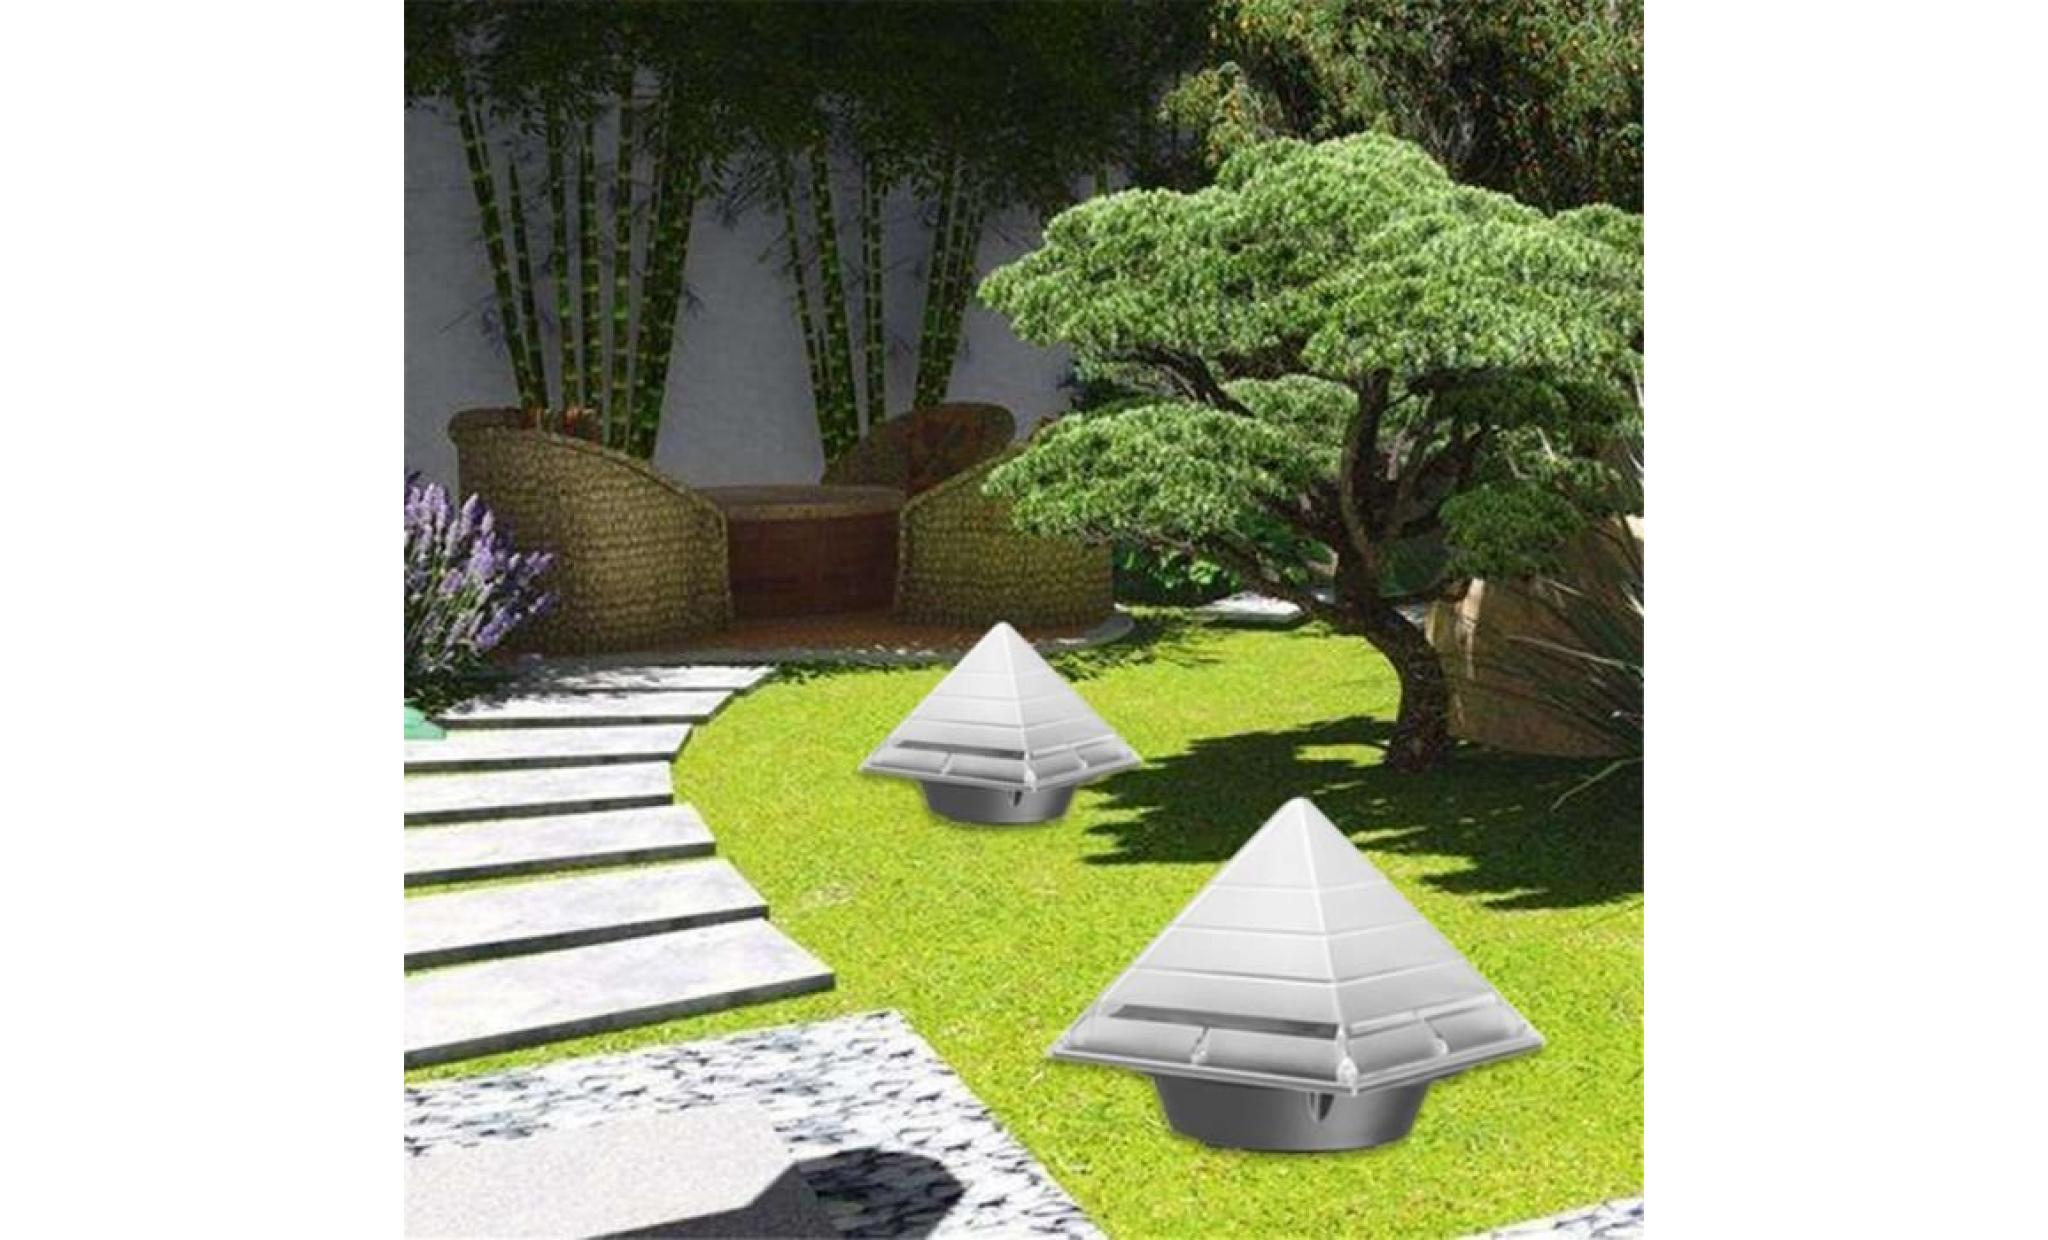 jz pyramide jardin lampe solaire 2 led sous terre terrain pour pelouse path lampe decor jzhg5123 pas cher